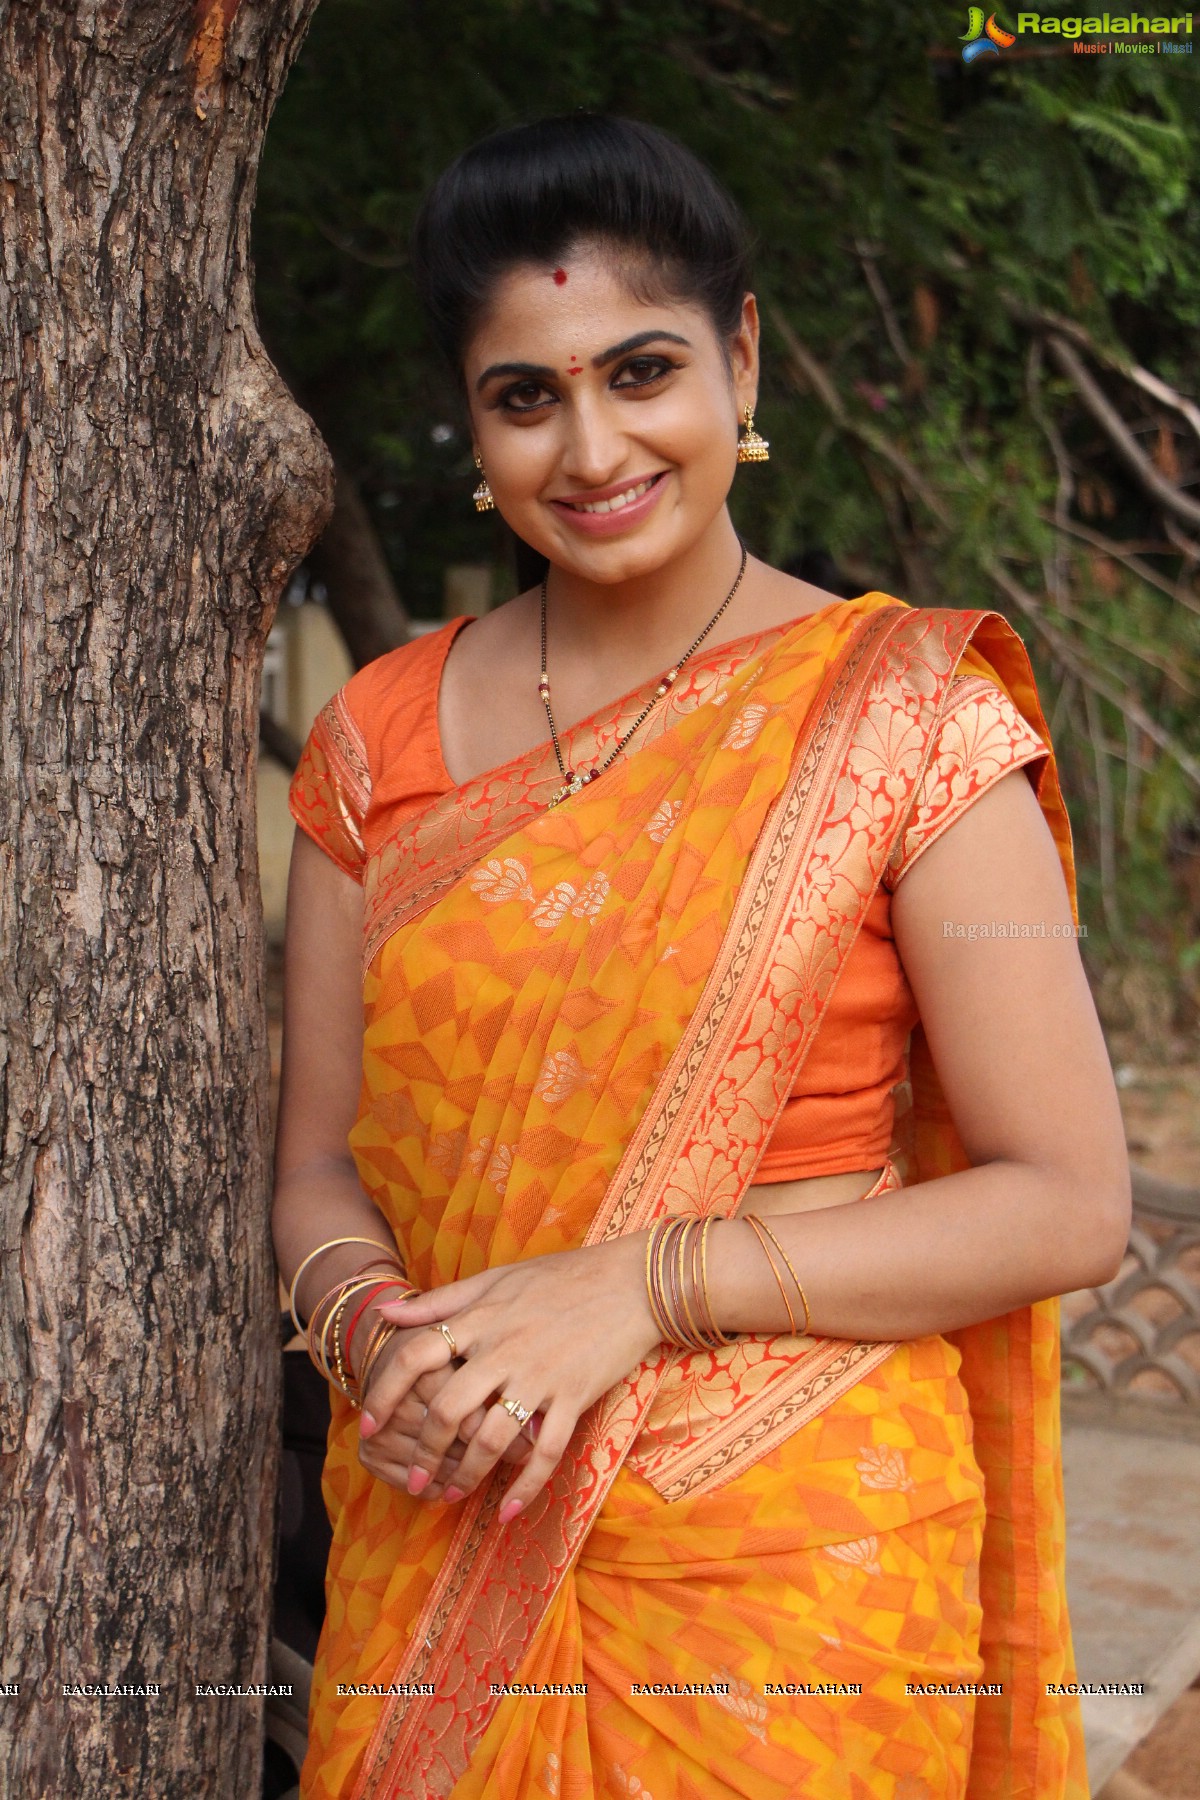 Chaitraa Rai